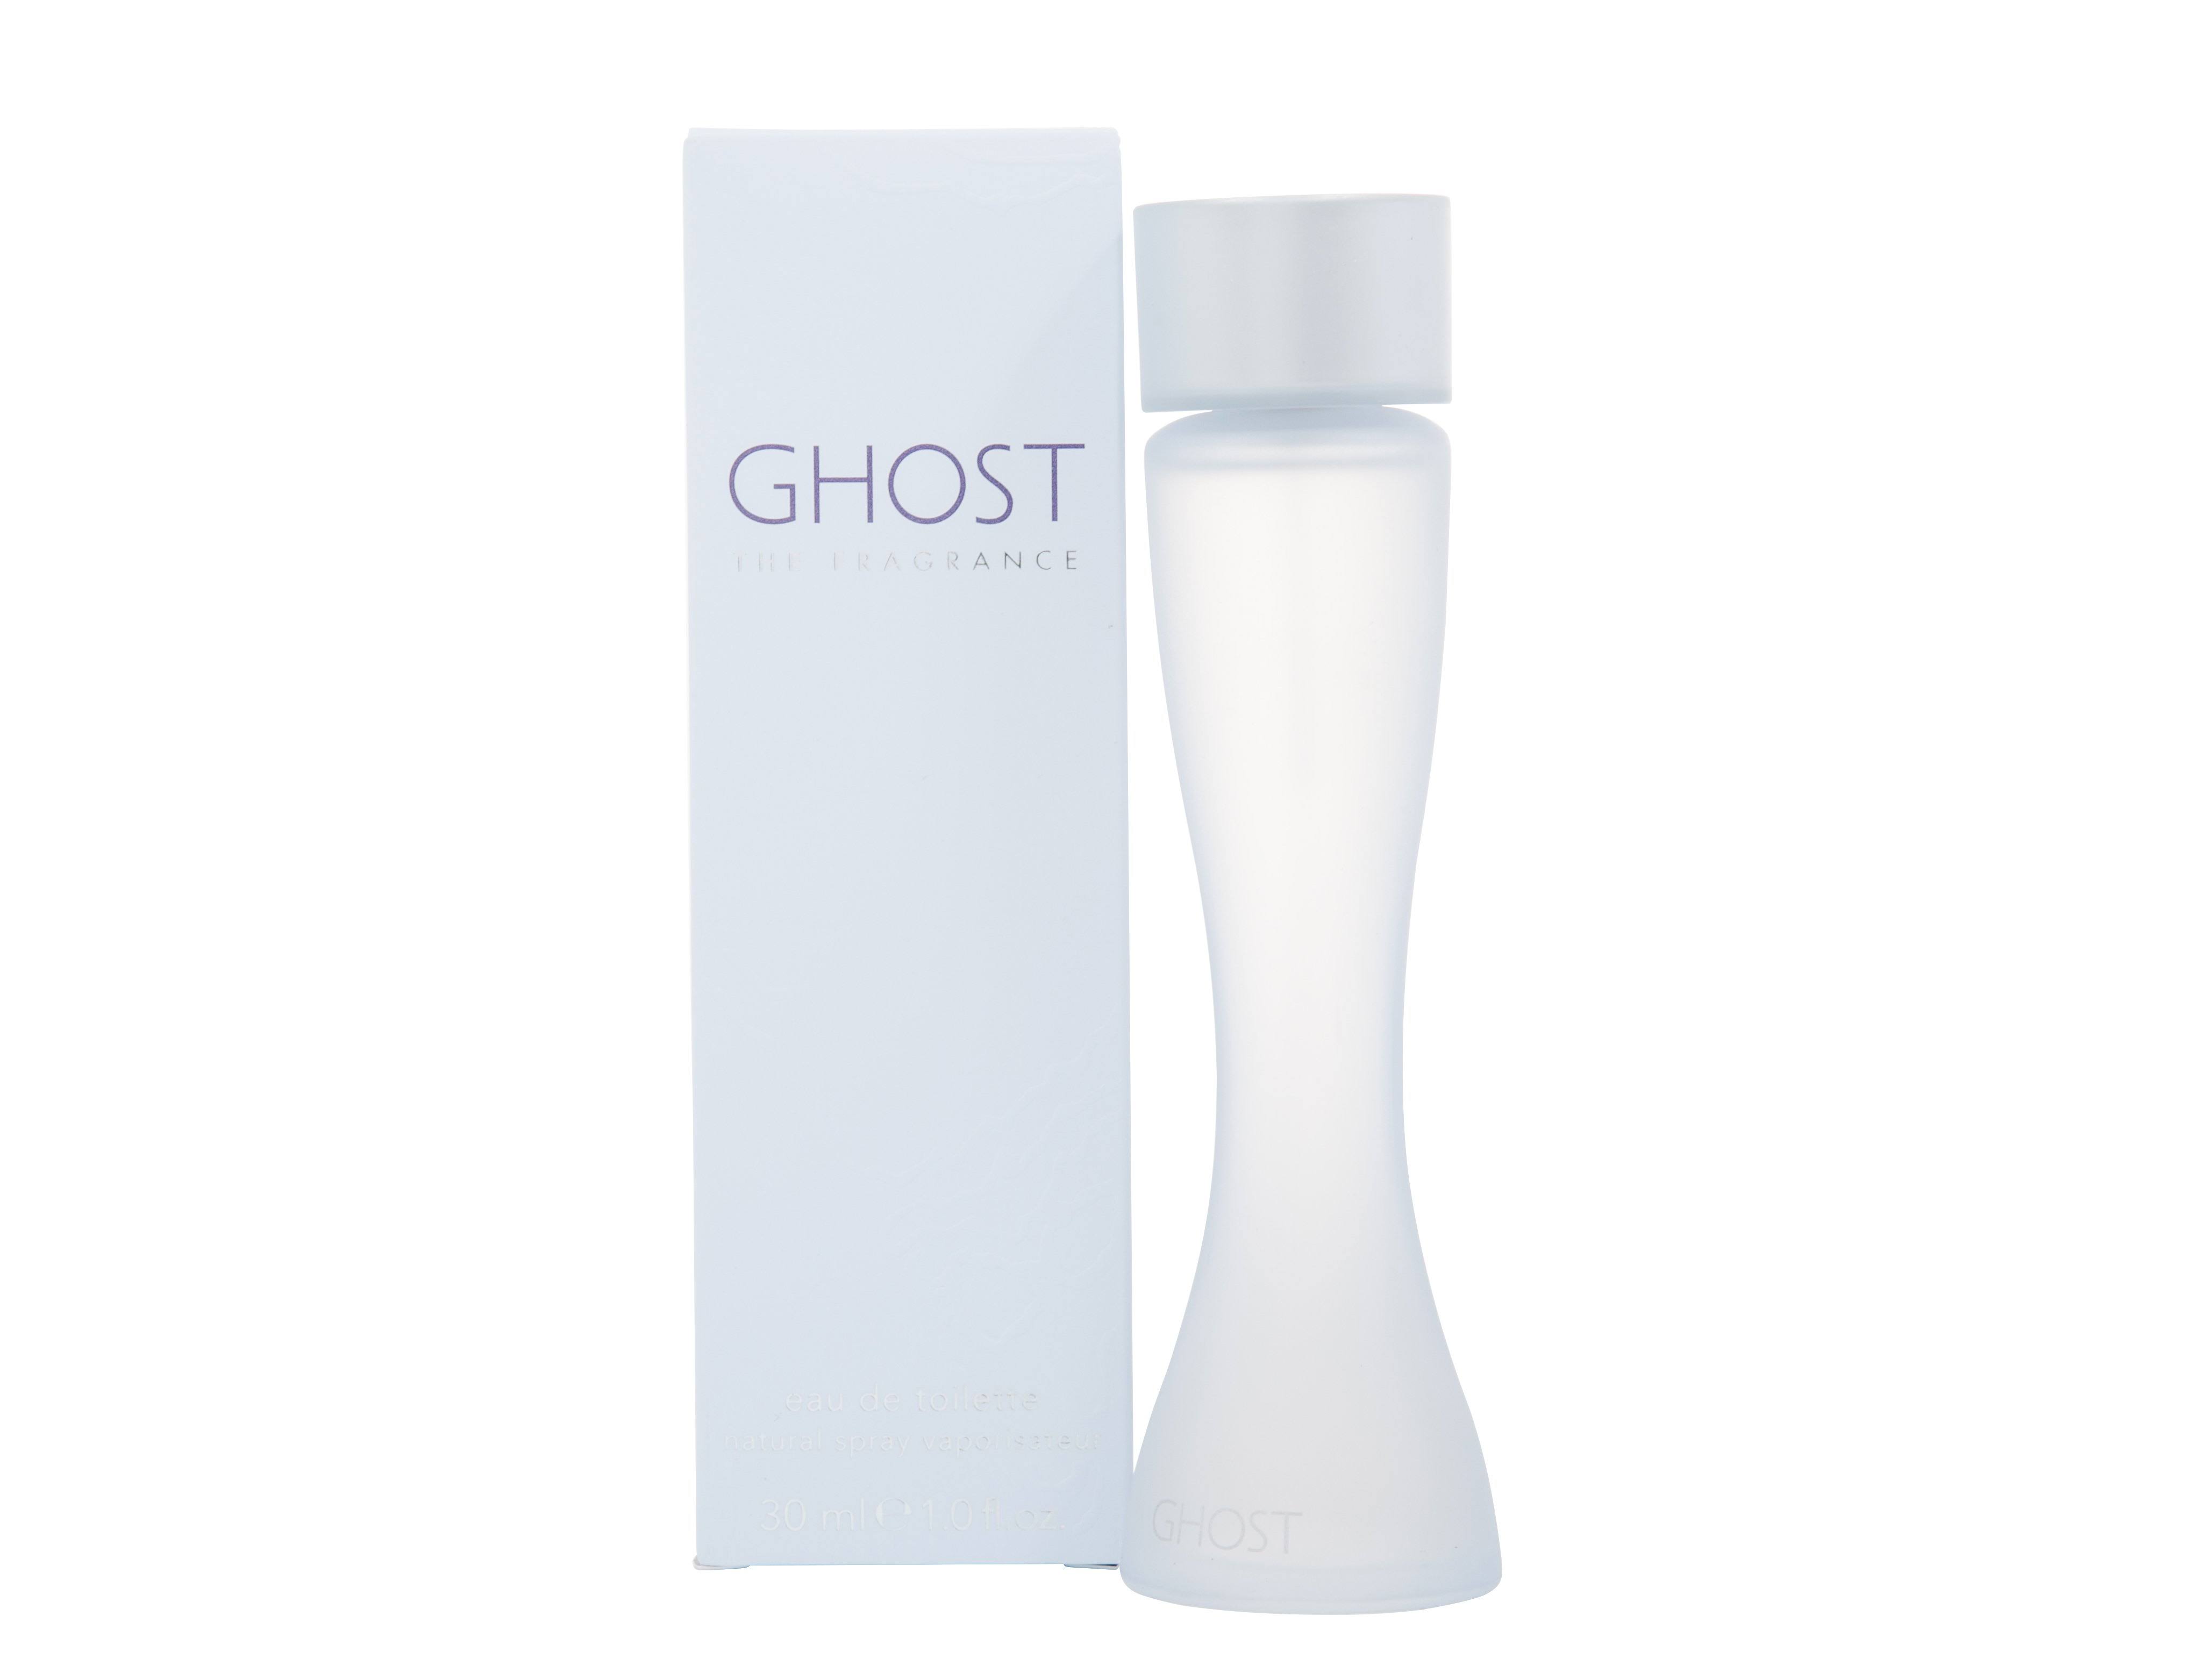 Ghost The Fragrance Women's Eau de Toilette Spray - 30ml